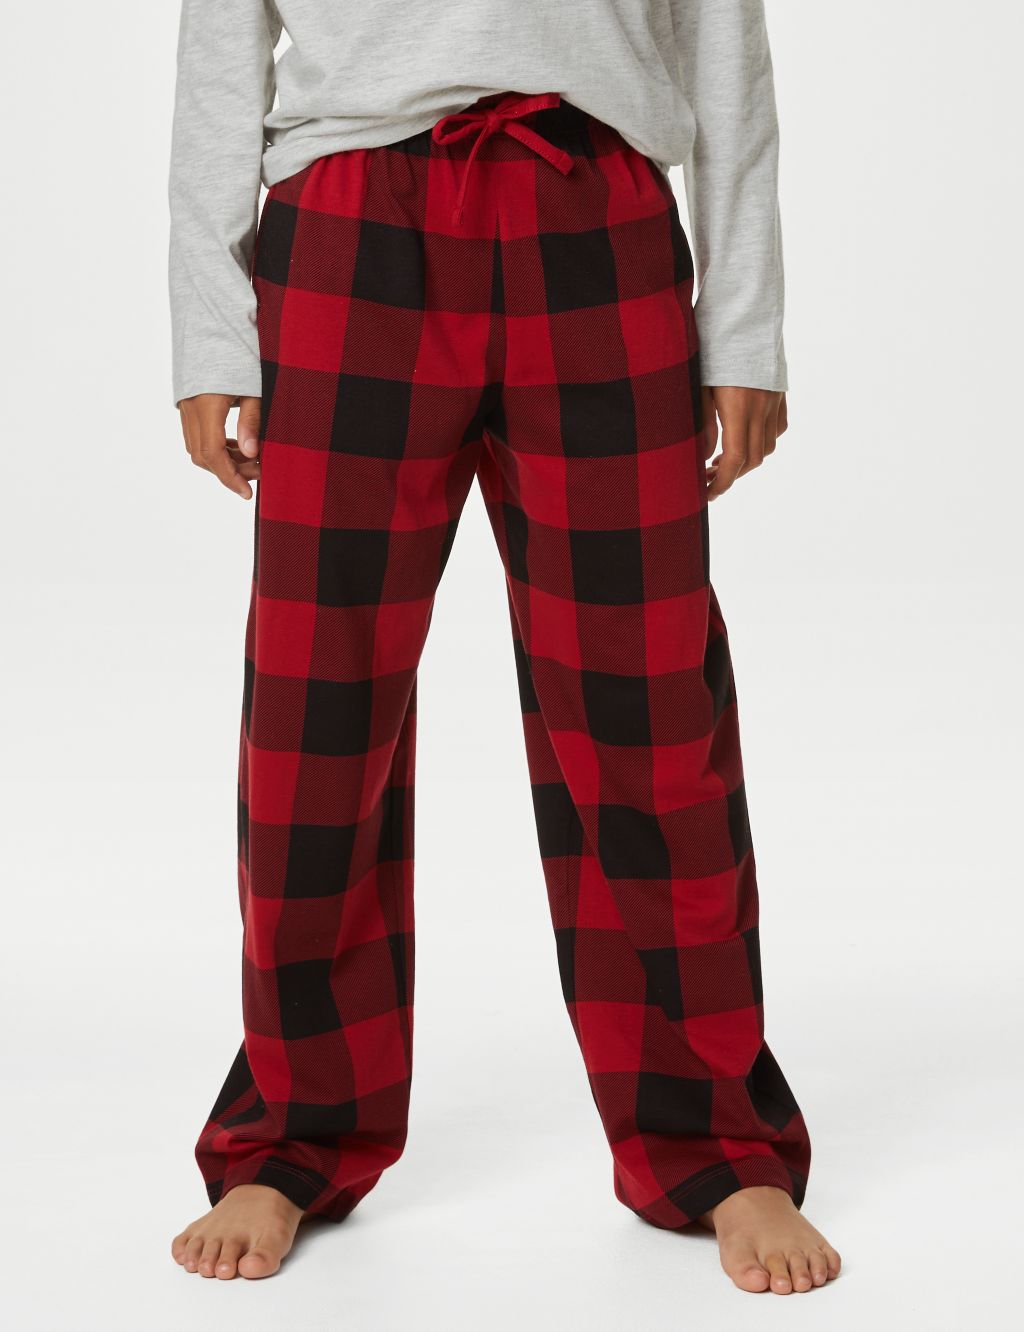 Kids' Checked Family Christmas Pyjama Set (1-16 Yrs) image 5